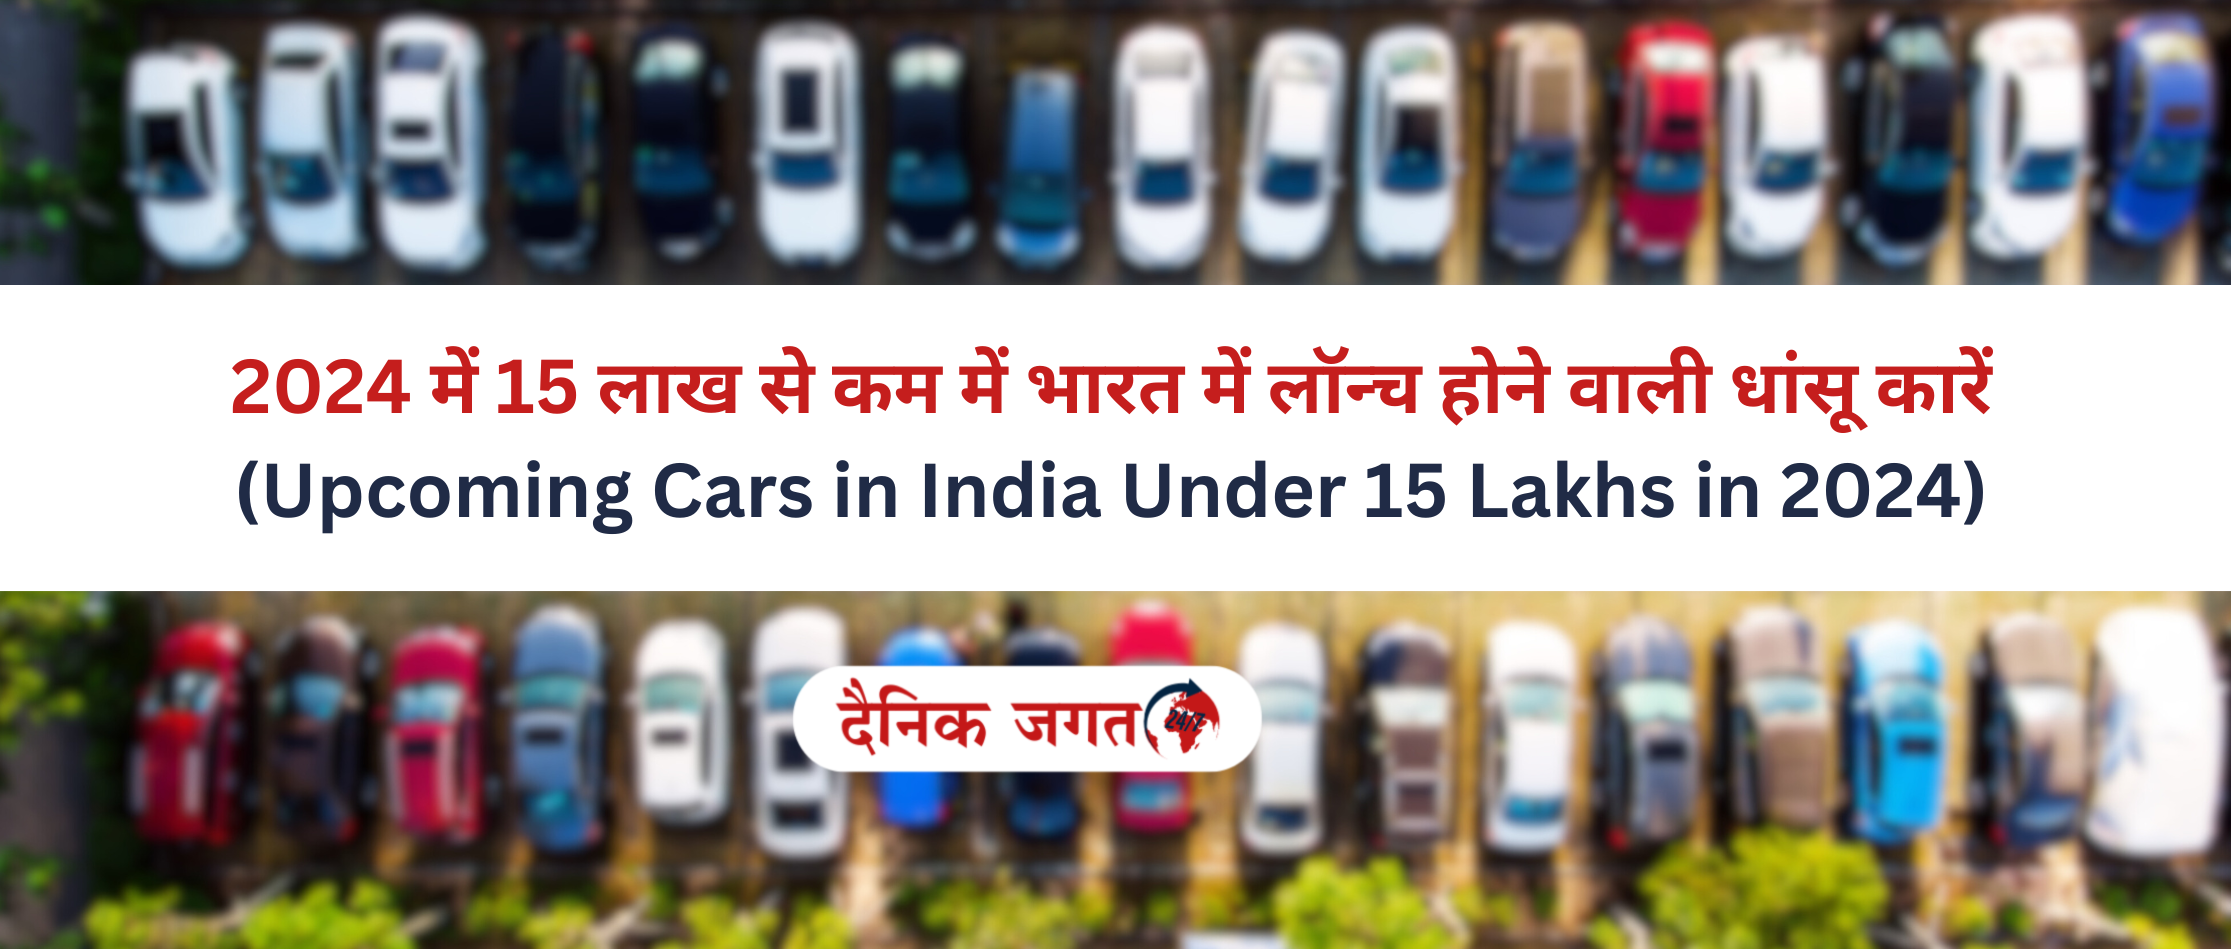 2024 में 15 लाख के तहत भारत में लॉन्च होने वाली धांसू कारें (Upcoming Cars in India Under 15 Lakhs in 2024)